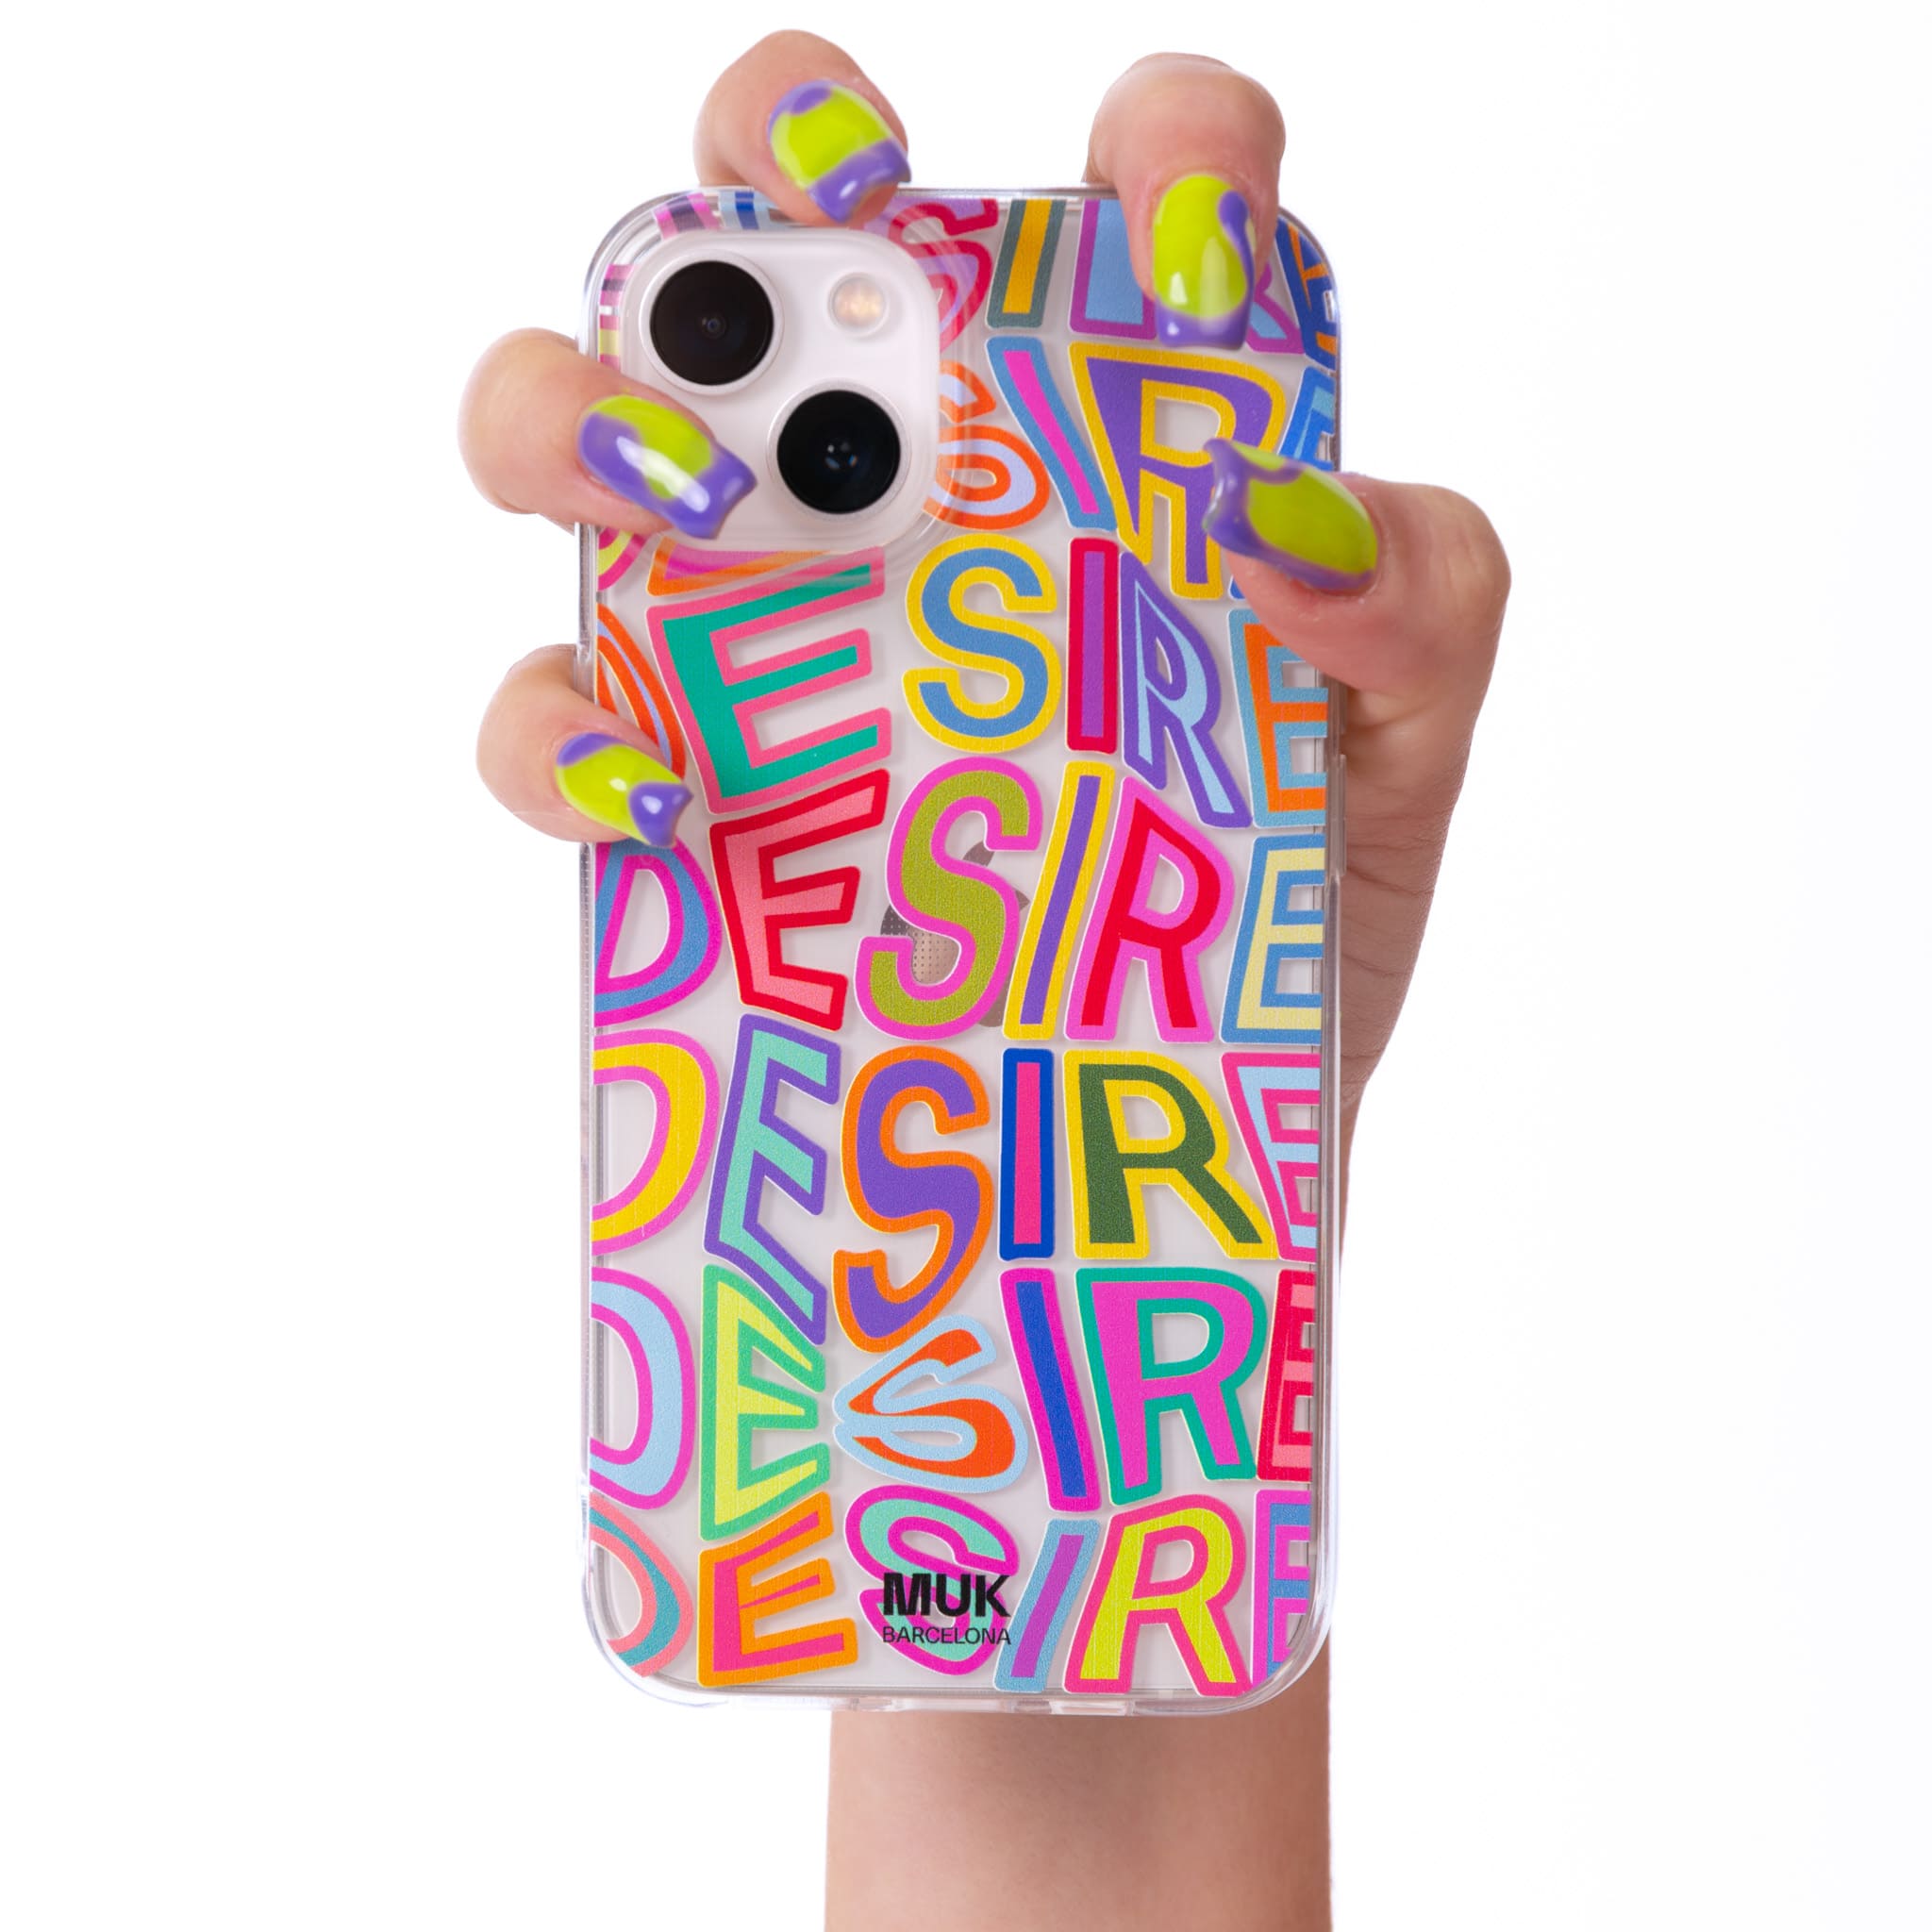 Funda de móvil transparente frase Desire colores distorsionada.
